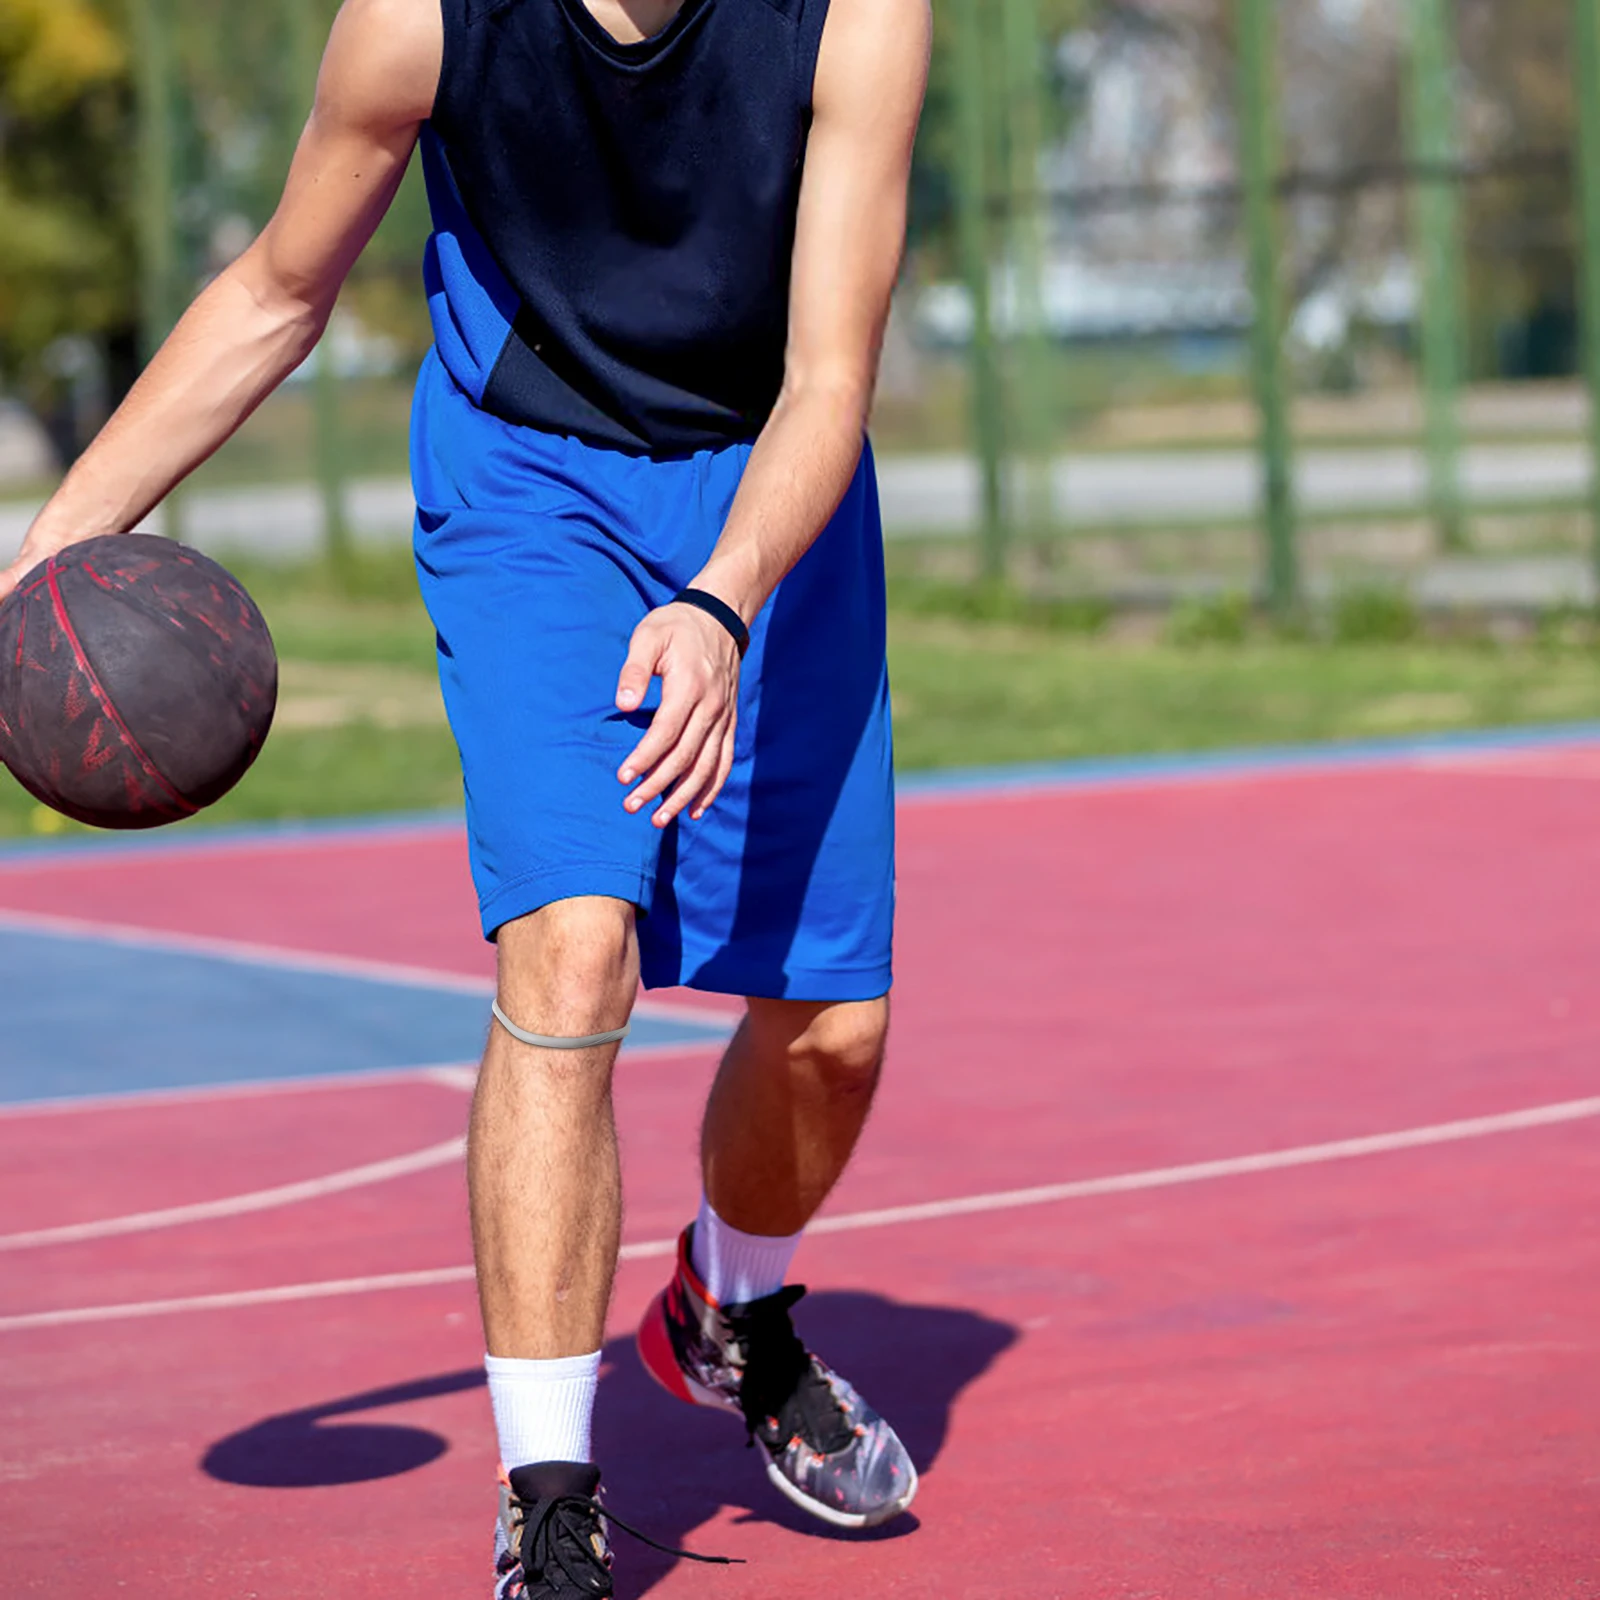 1 ADET İnce Patella Kemer Diz Eklemi Halat Halka Lastik Bant Spor Dizlik Diz Kuvvet Kemer Yürüyüş Futbol Basketbol Koşu Spor